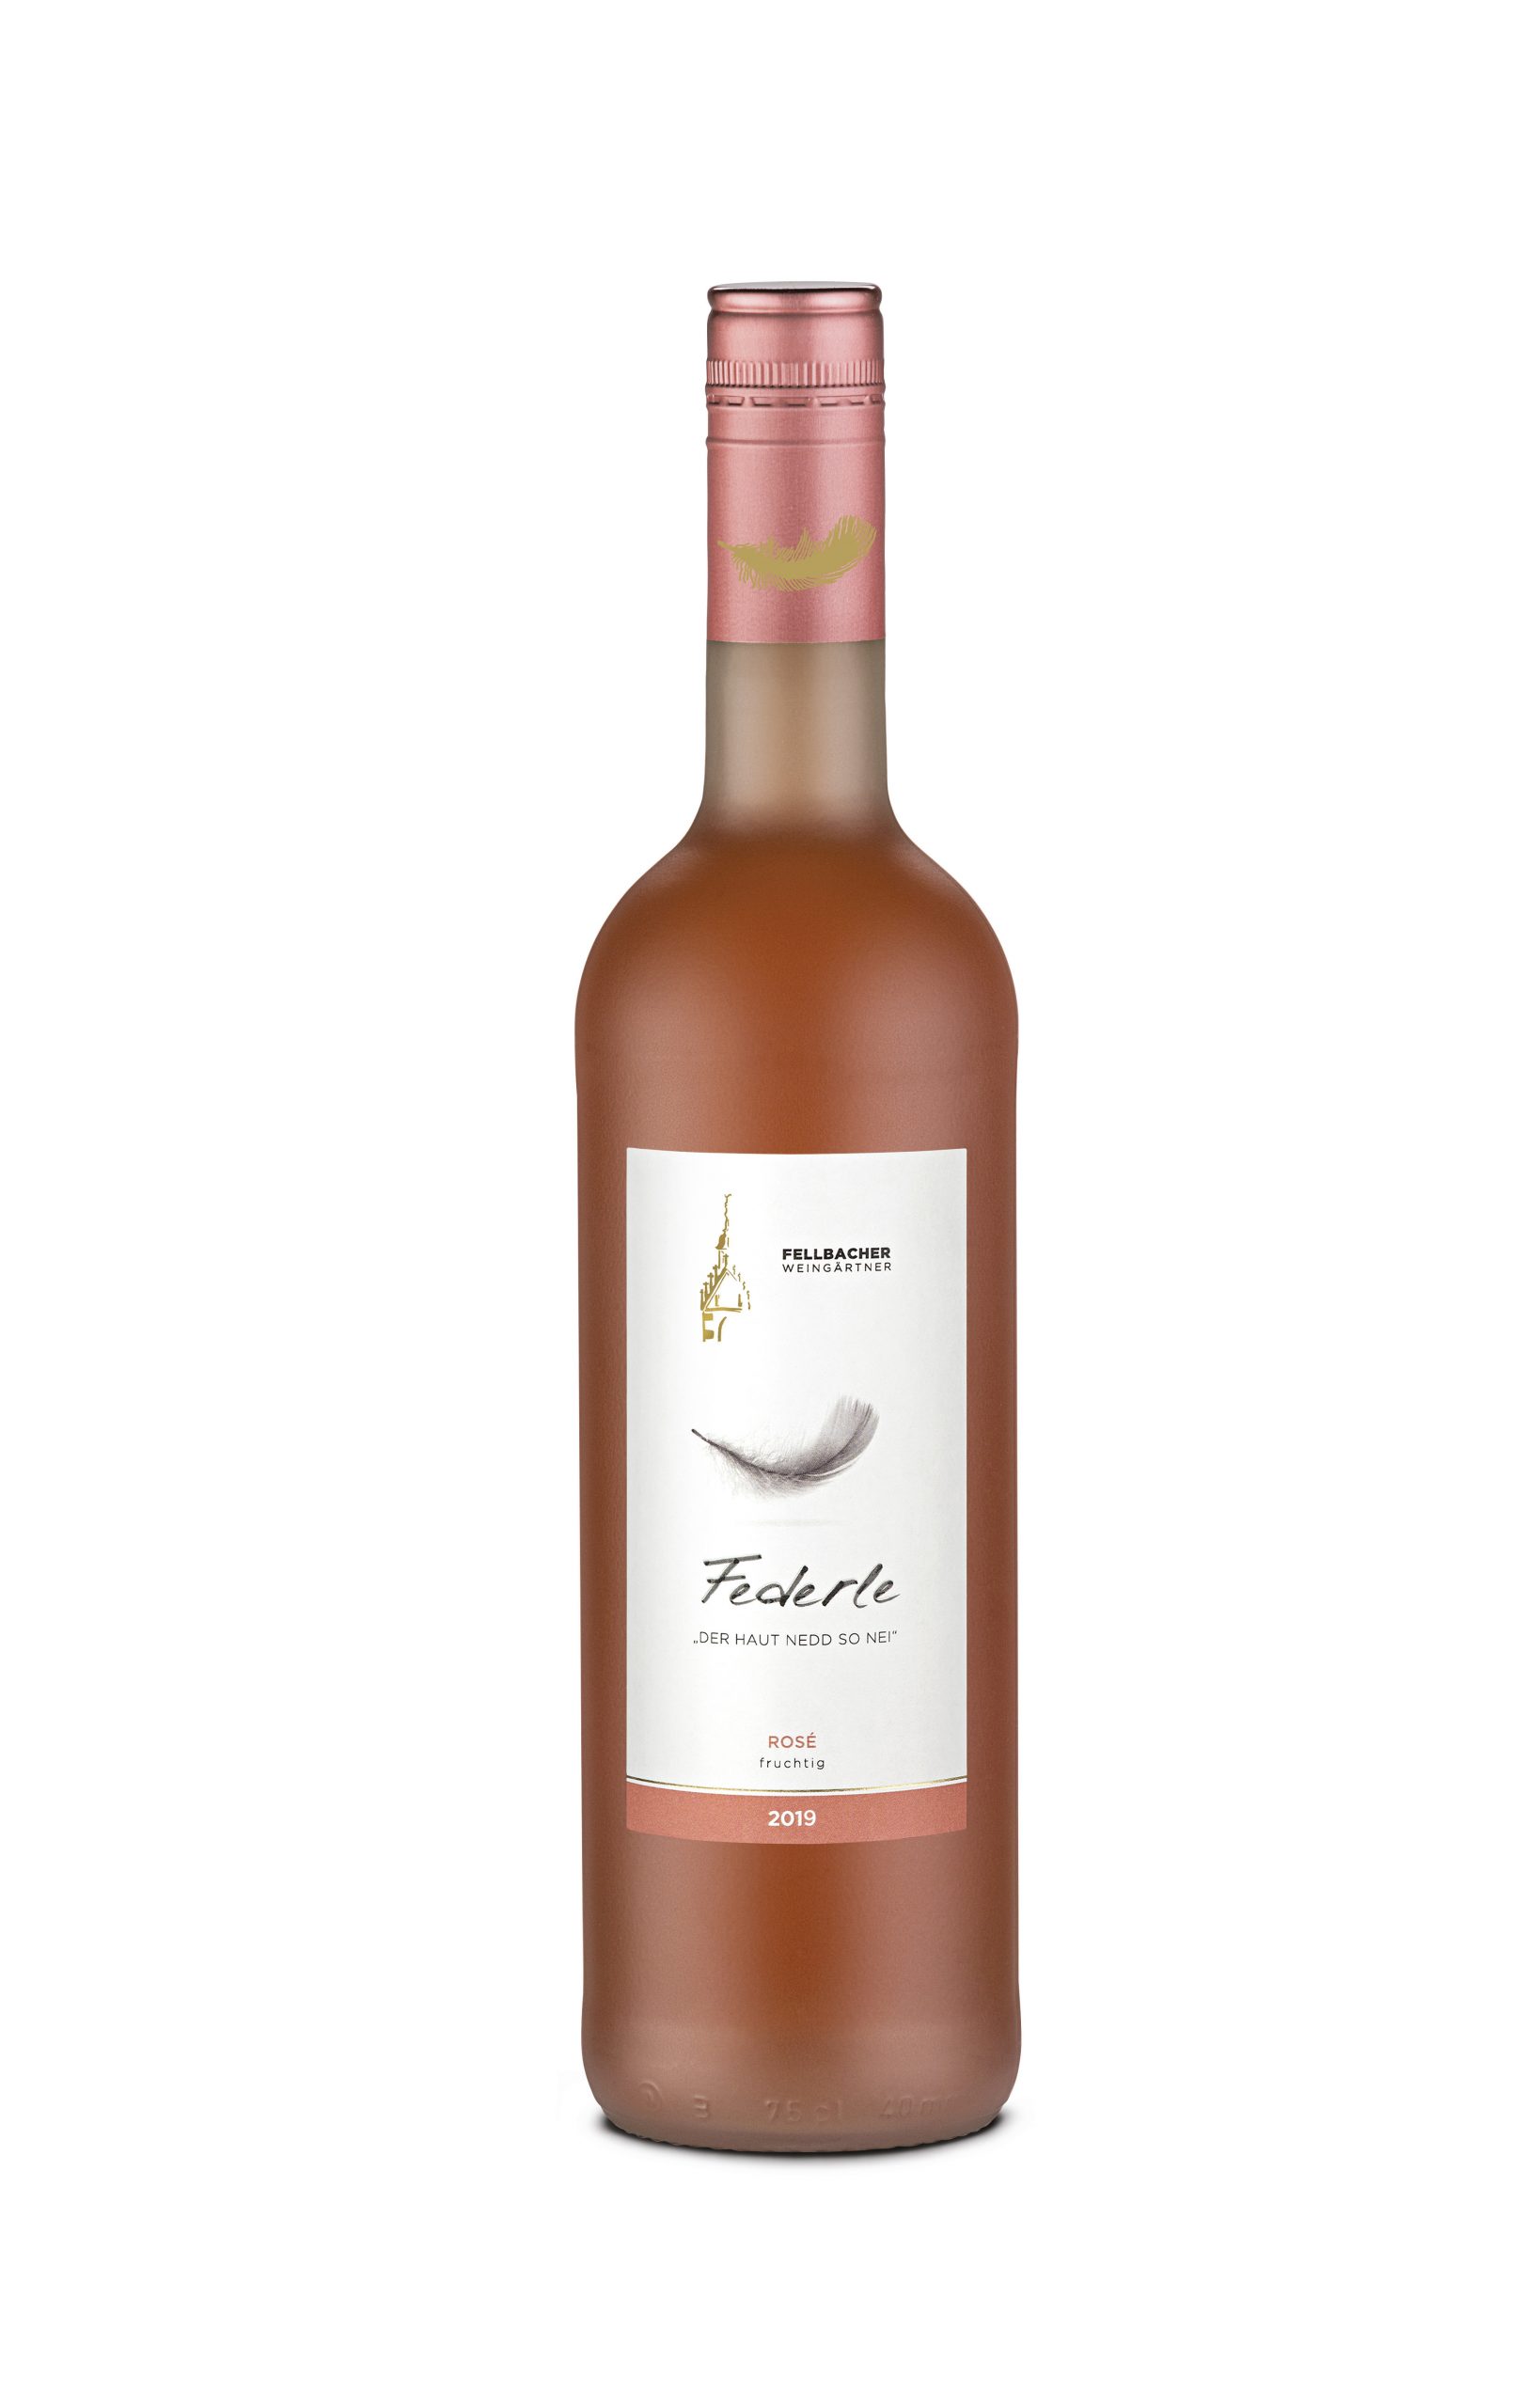 Wein mit moderatem Alkoholgehalt: Flaschenansicht des Federle Rosé